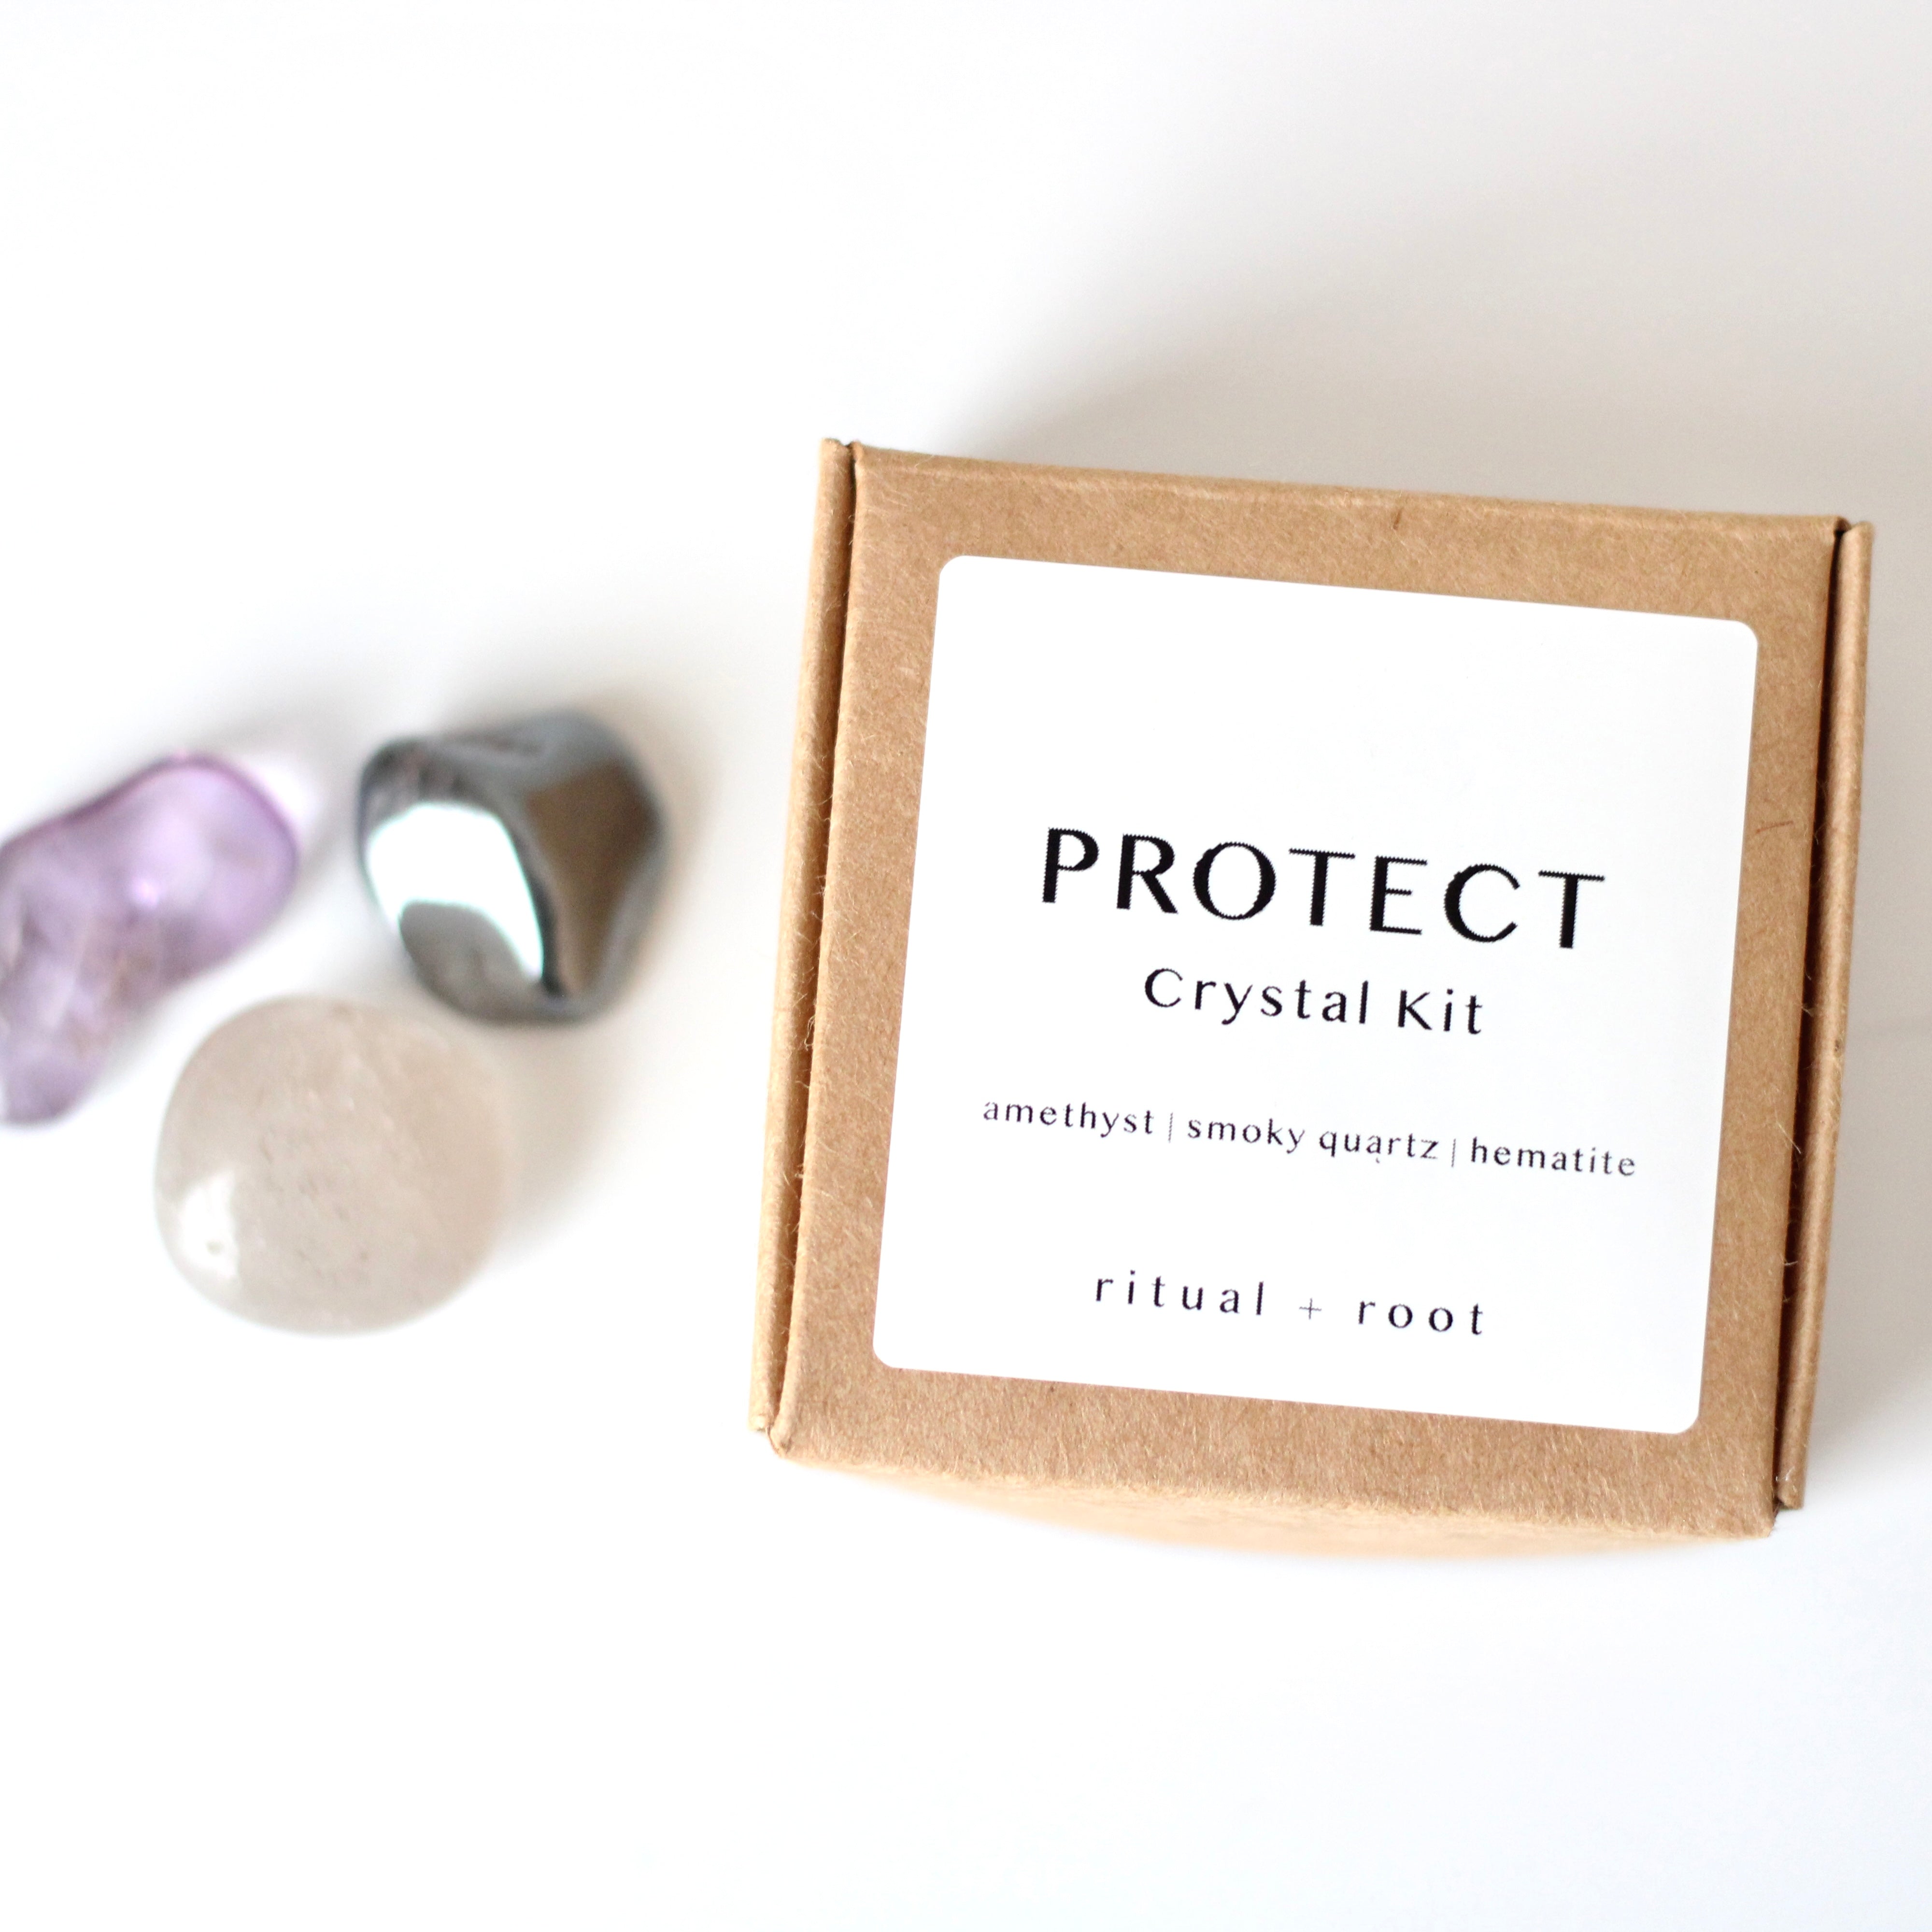 PROTECT Crystal Kit